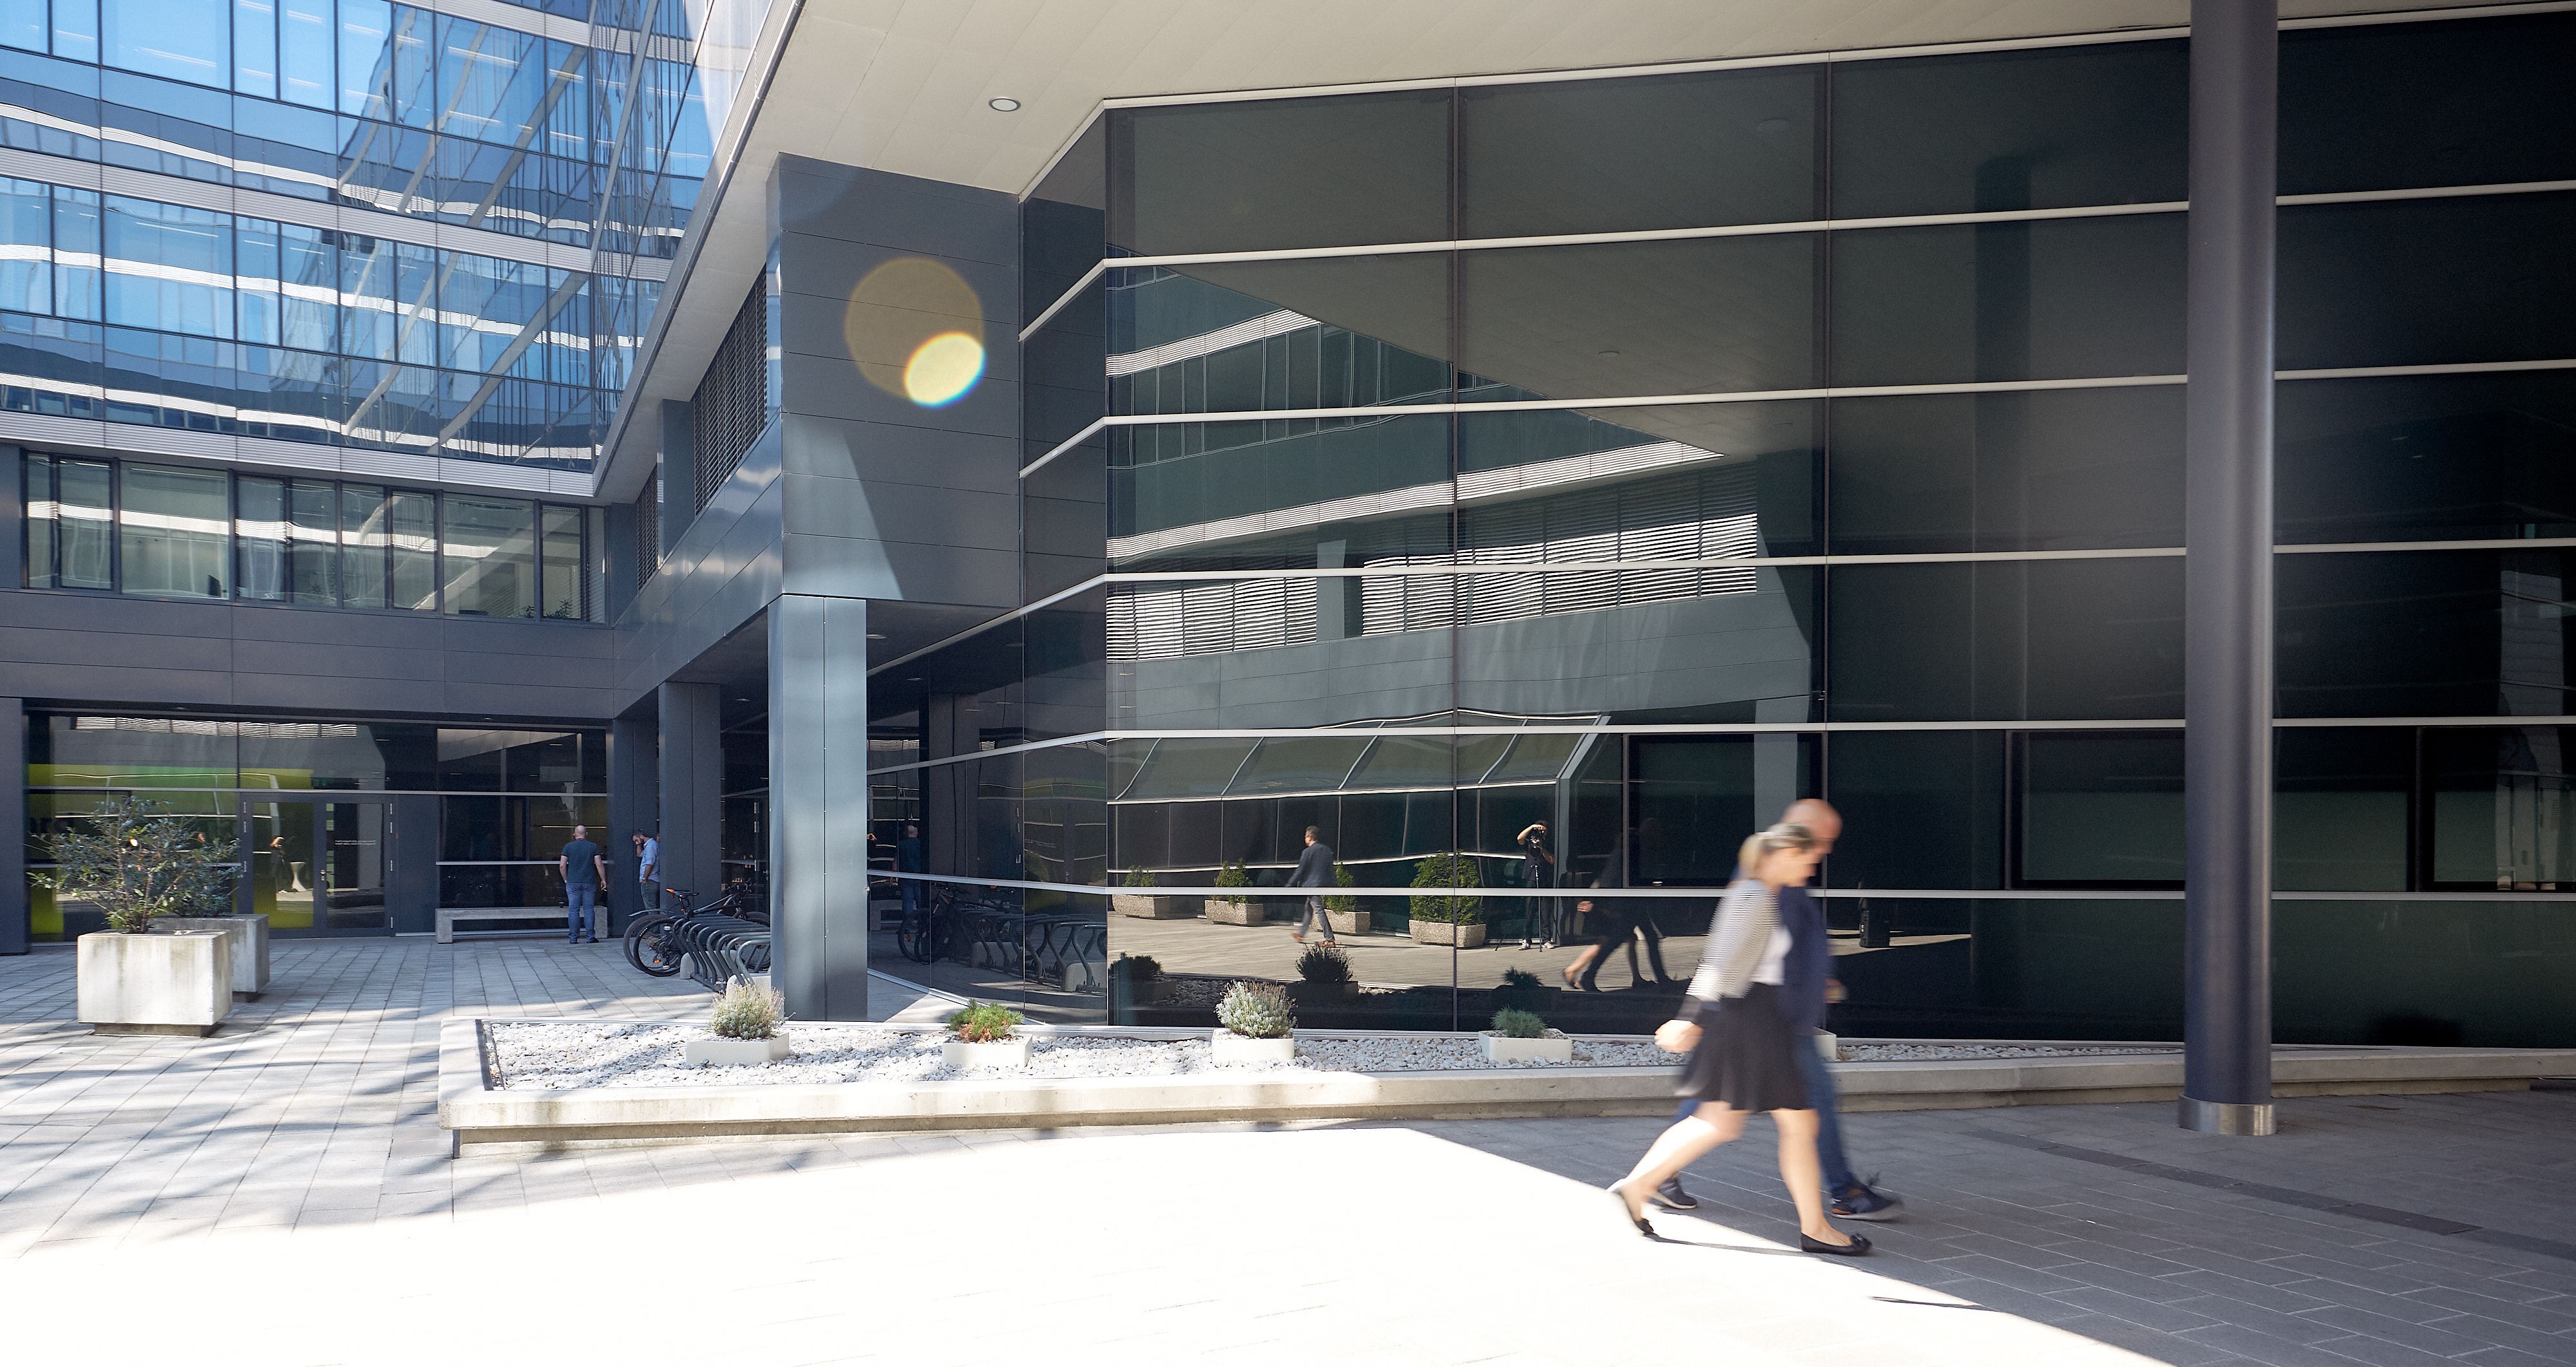 Foto: Ausschnitt eines modernen Bürogebäudes, in dessen Glasfassade sich die Alu-Glasfassade eines anderen Bürogebäudes spiegelt; im Vordergrund eine Frau und ein Mann, die nach rechts gehen 